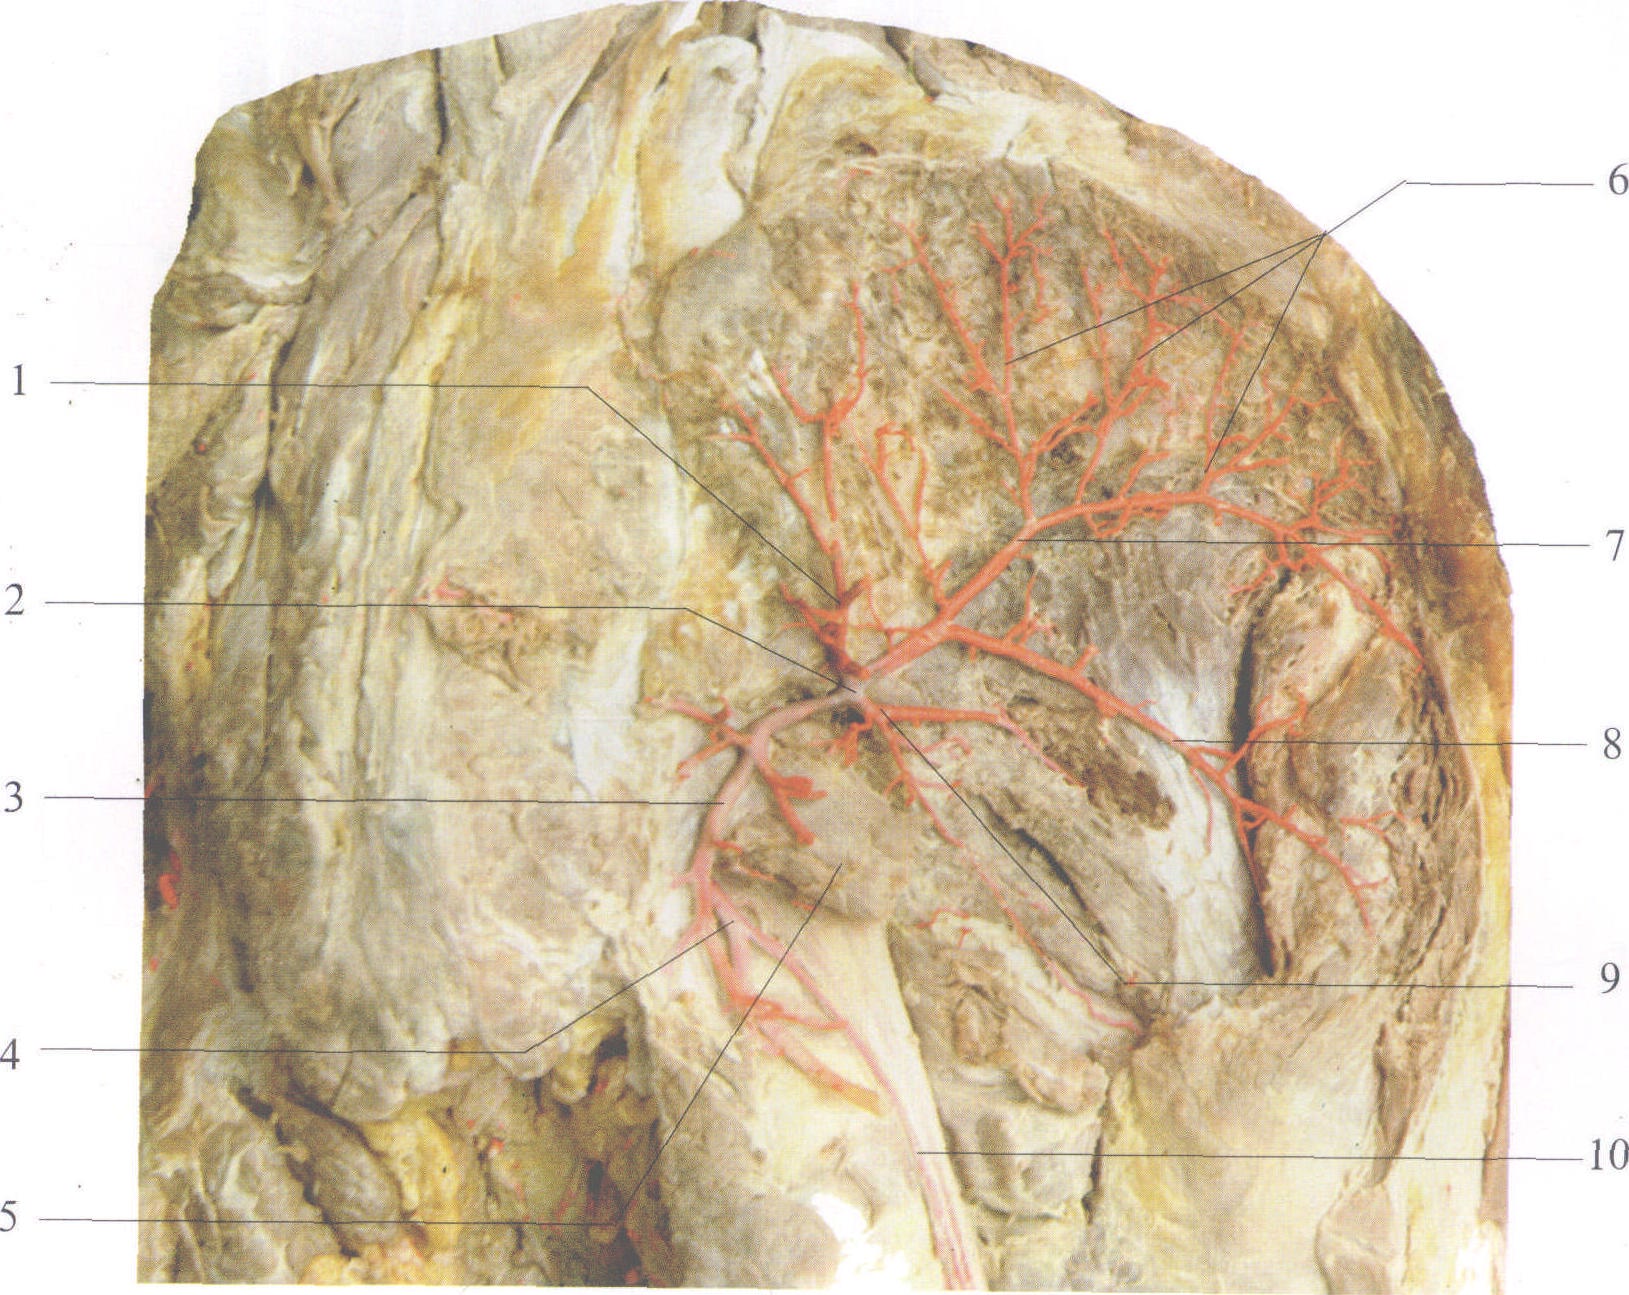 臀部血管解剖图片